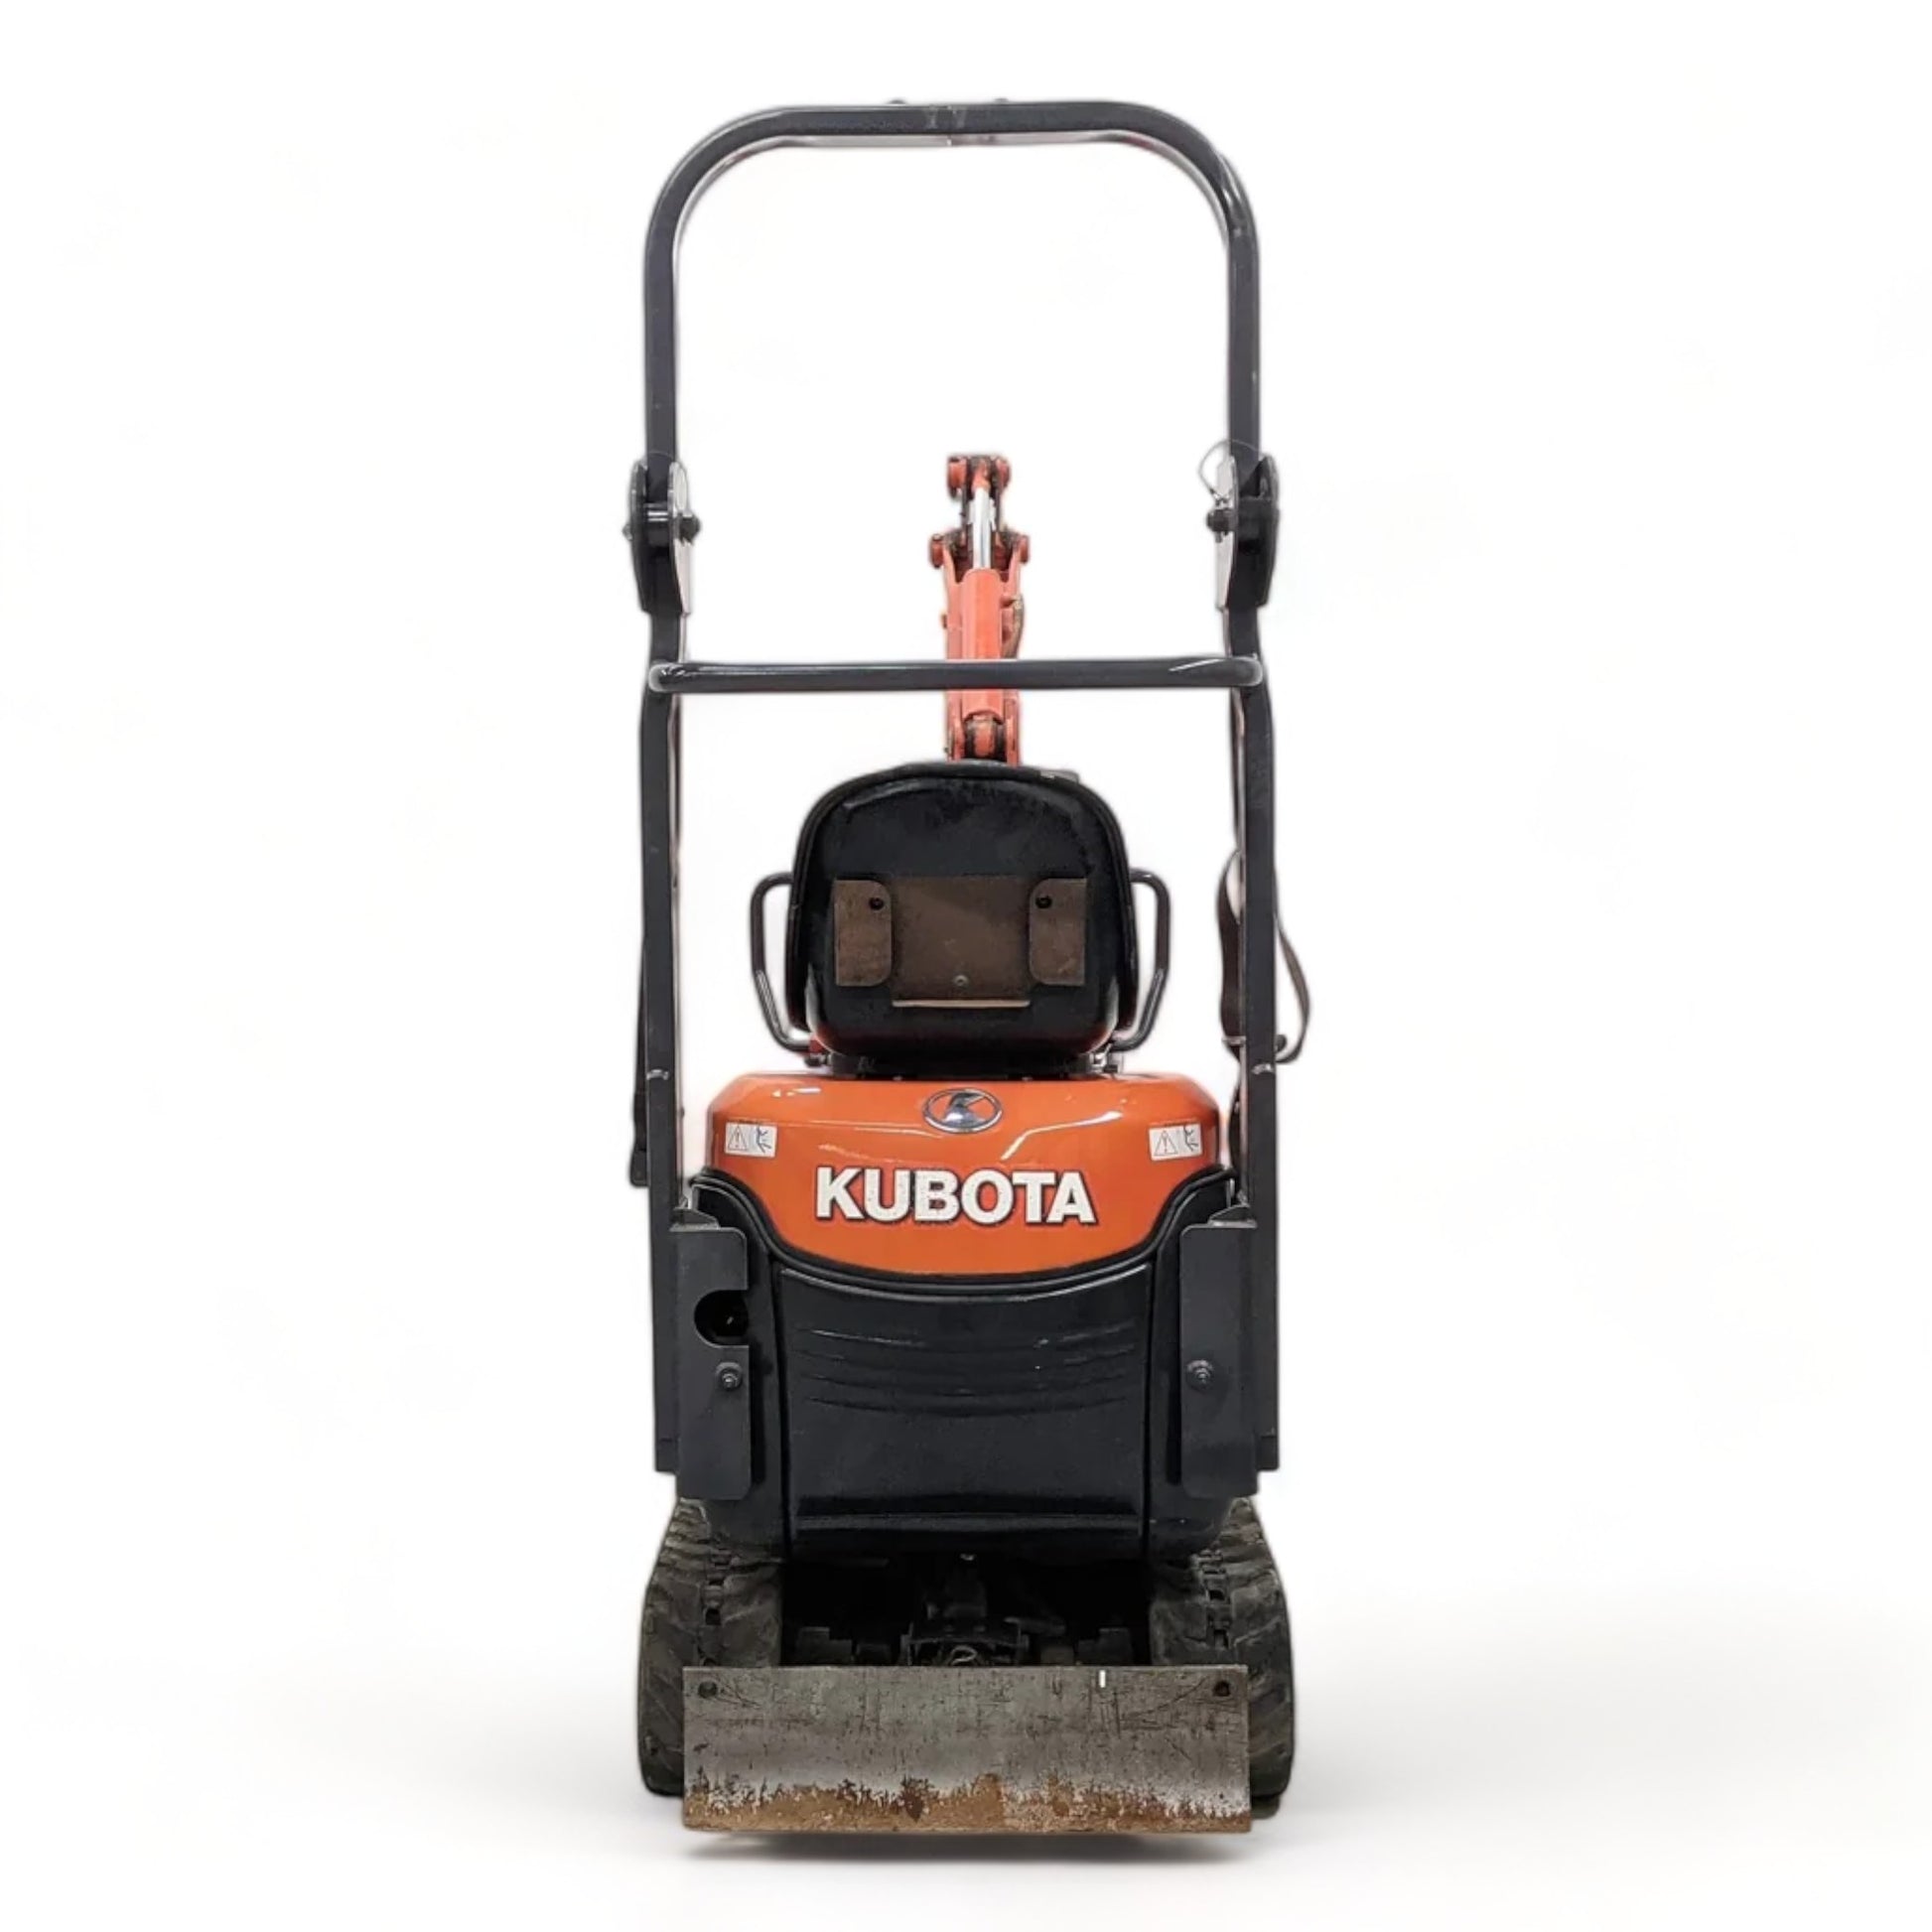 Kubota K008-3 Mini Excavator